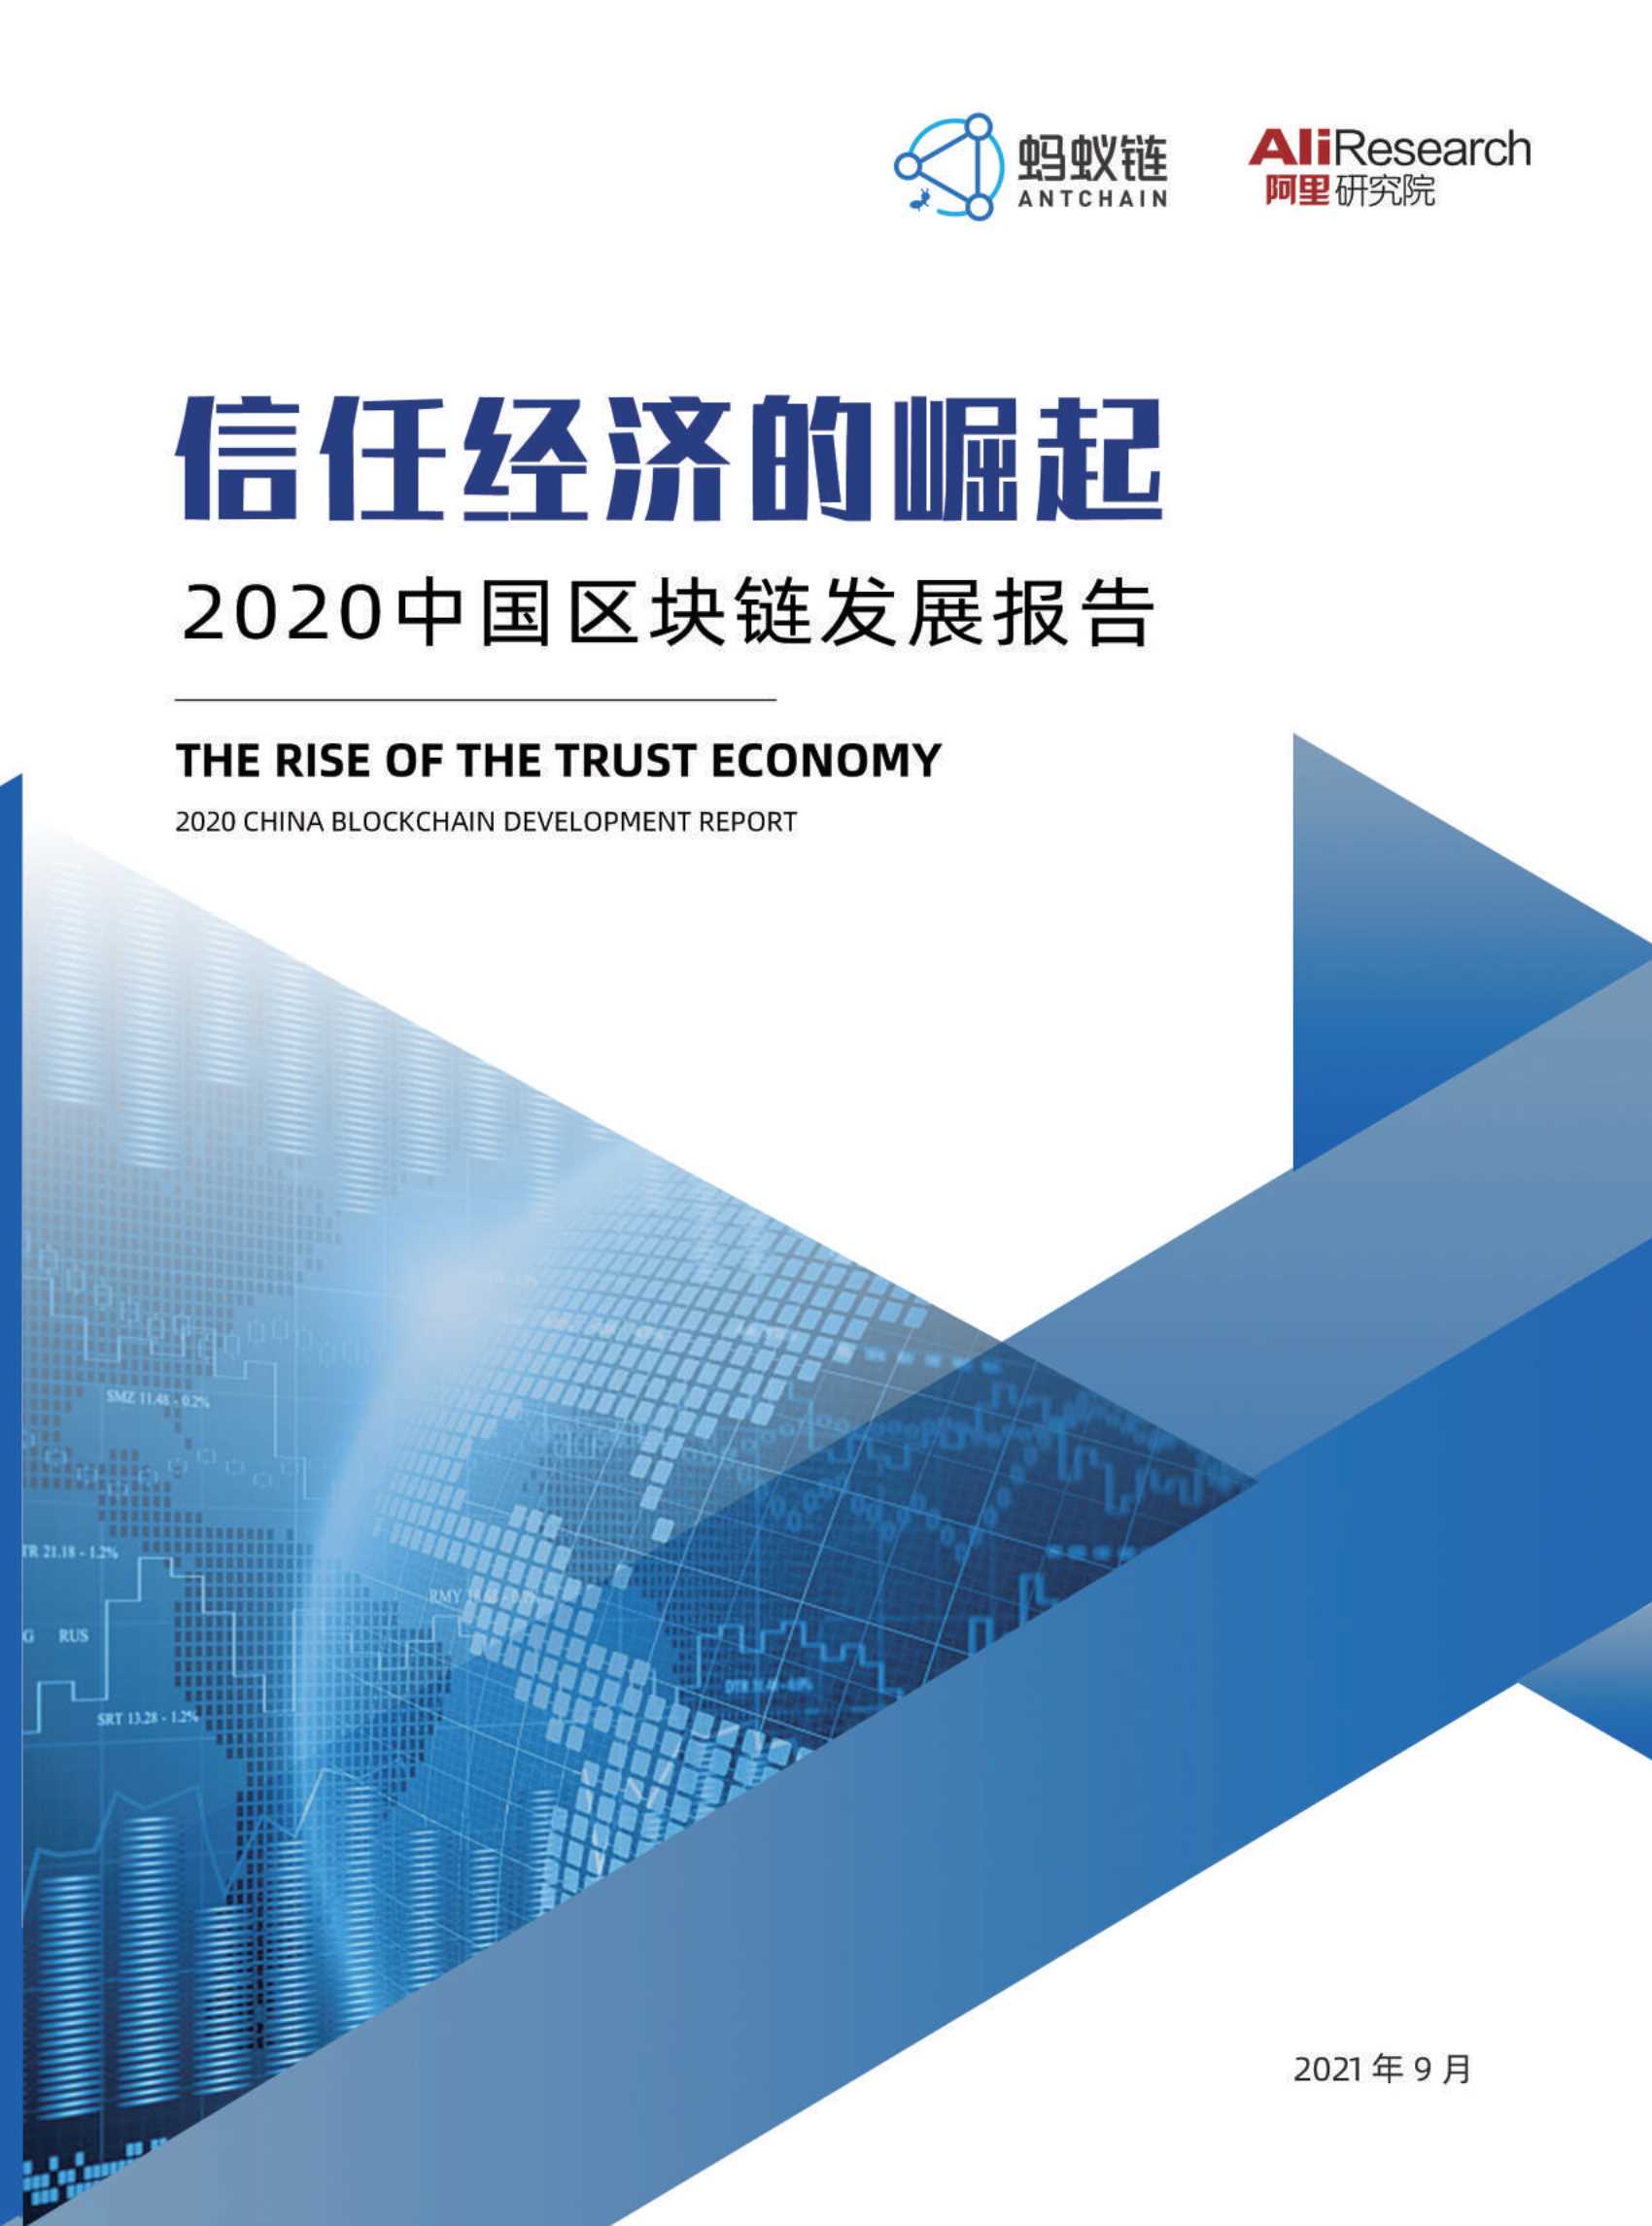 蚂蚁链-信任经济的崛起-2020中国区块链发展报告-2021.10-56页